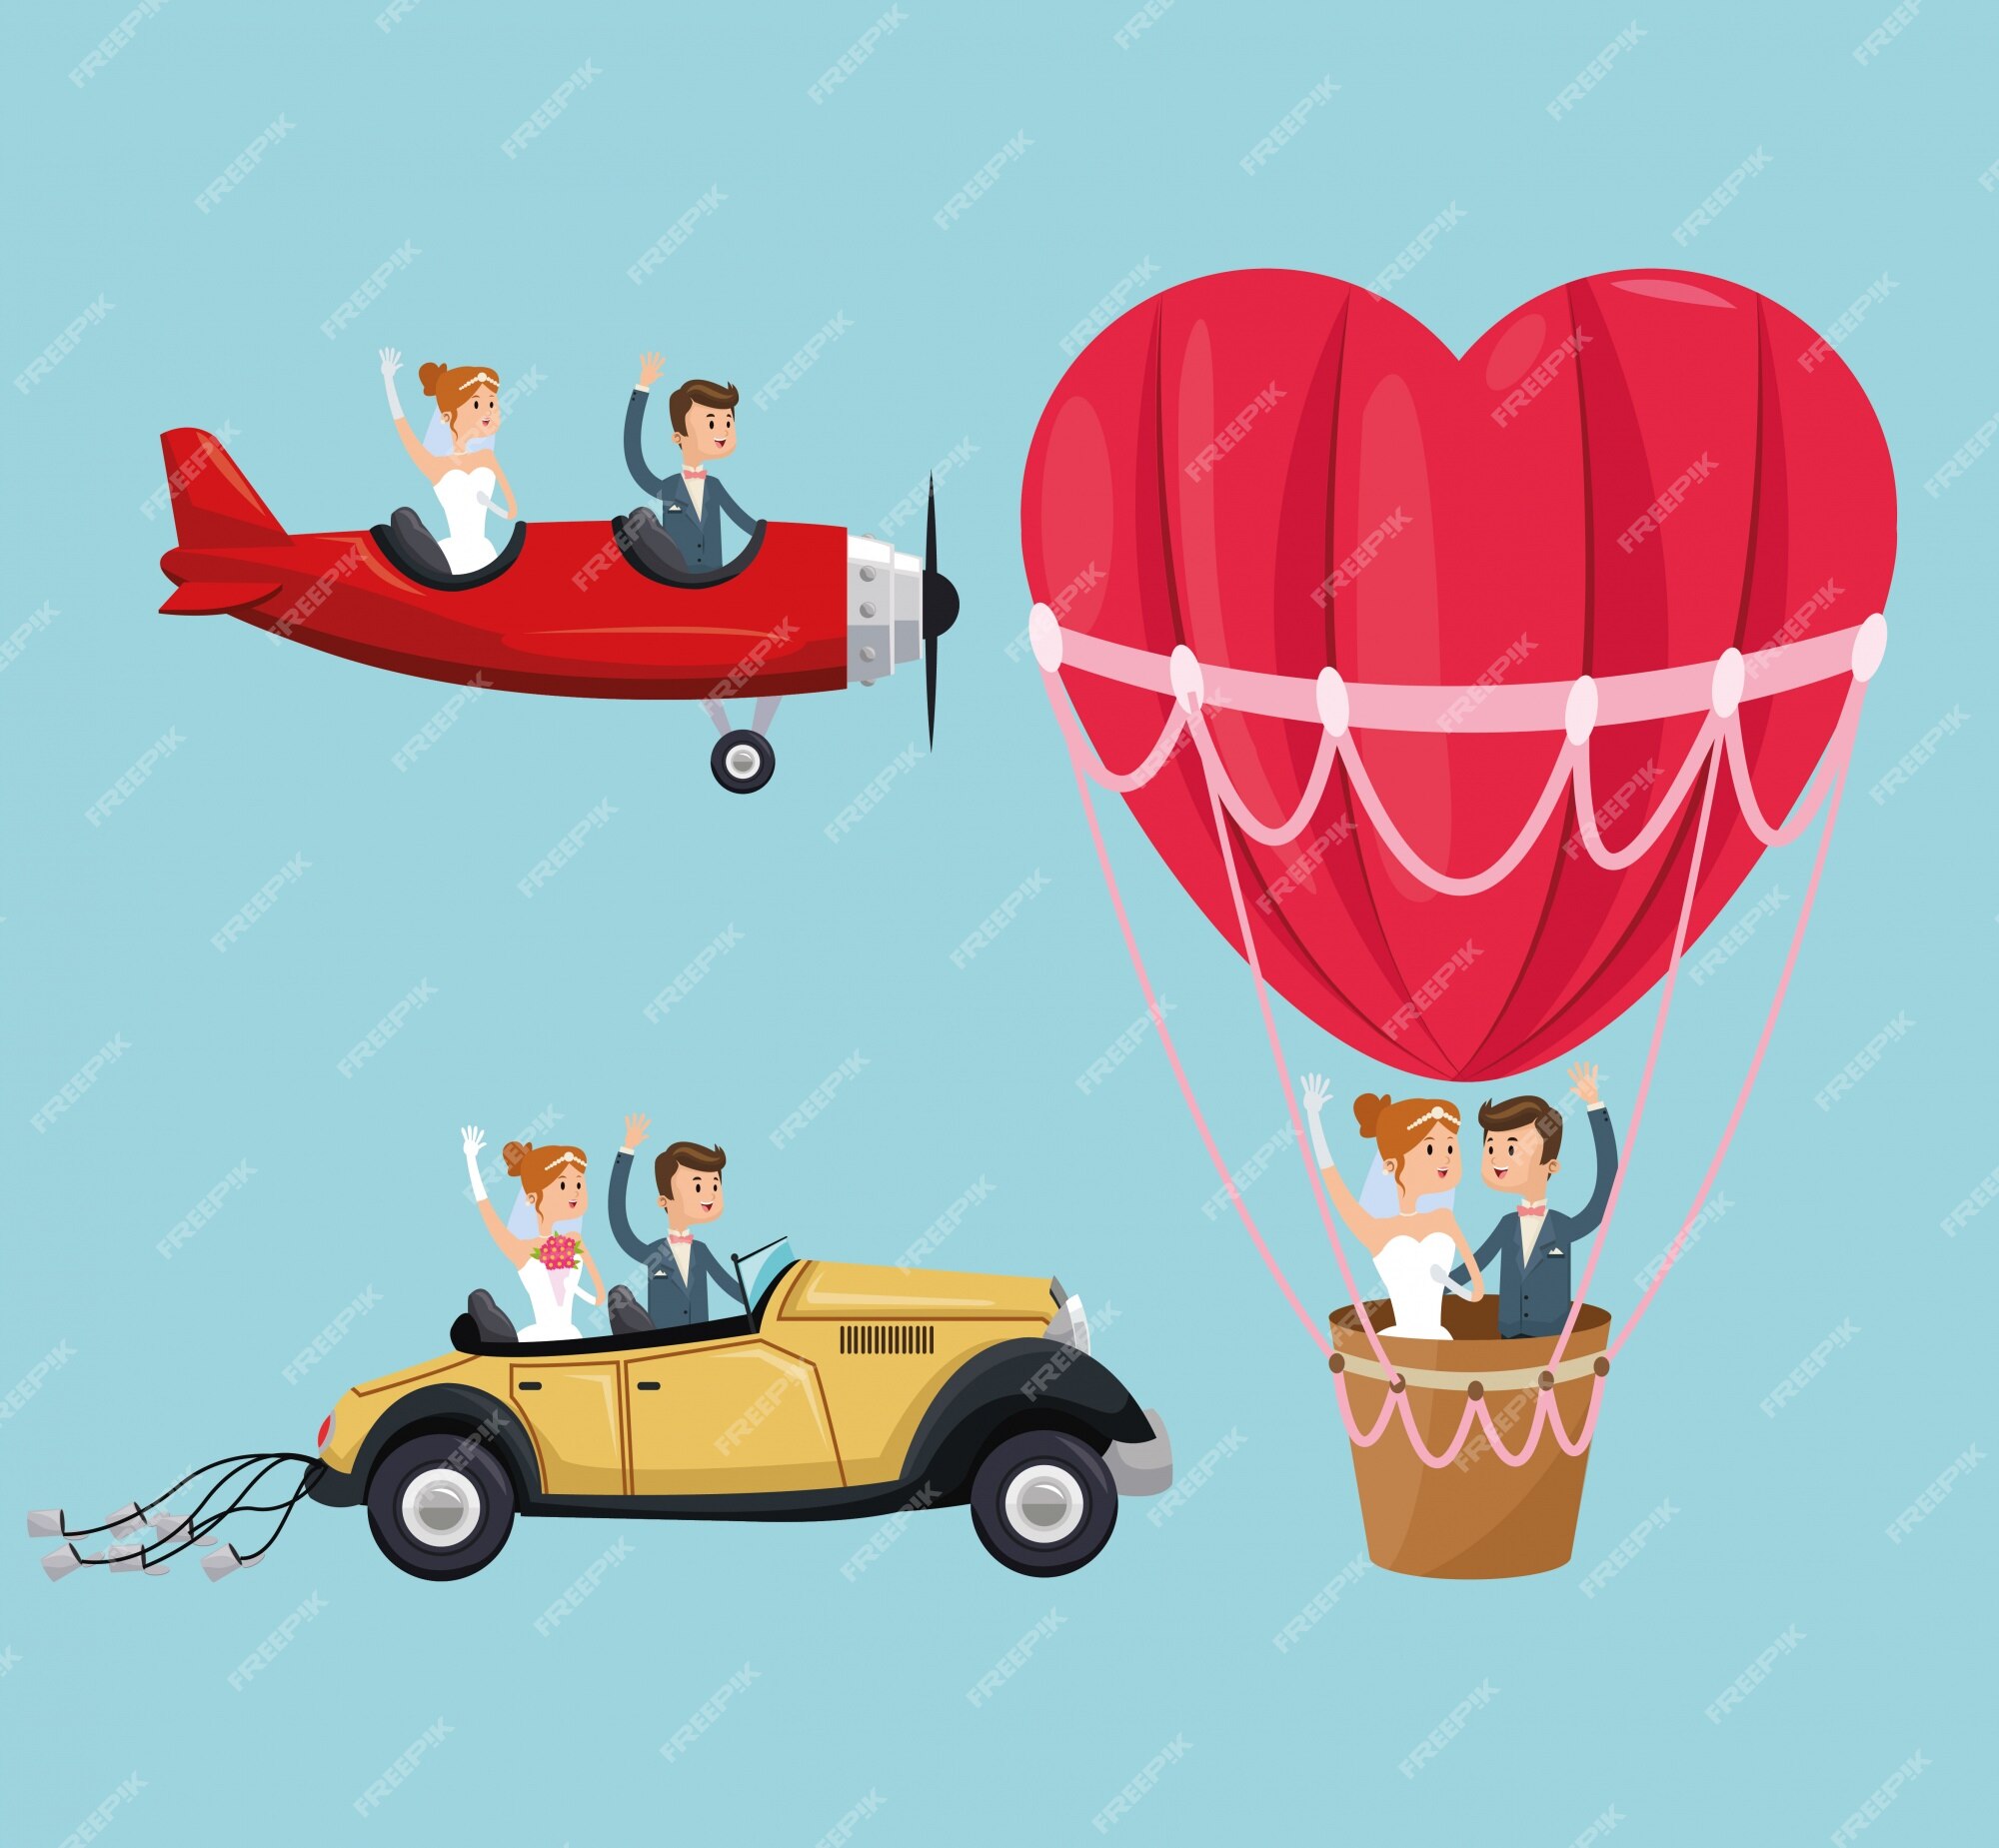 Premium Vector | Hot air balloon airplane car couple cartoon